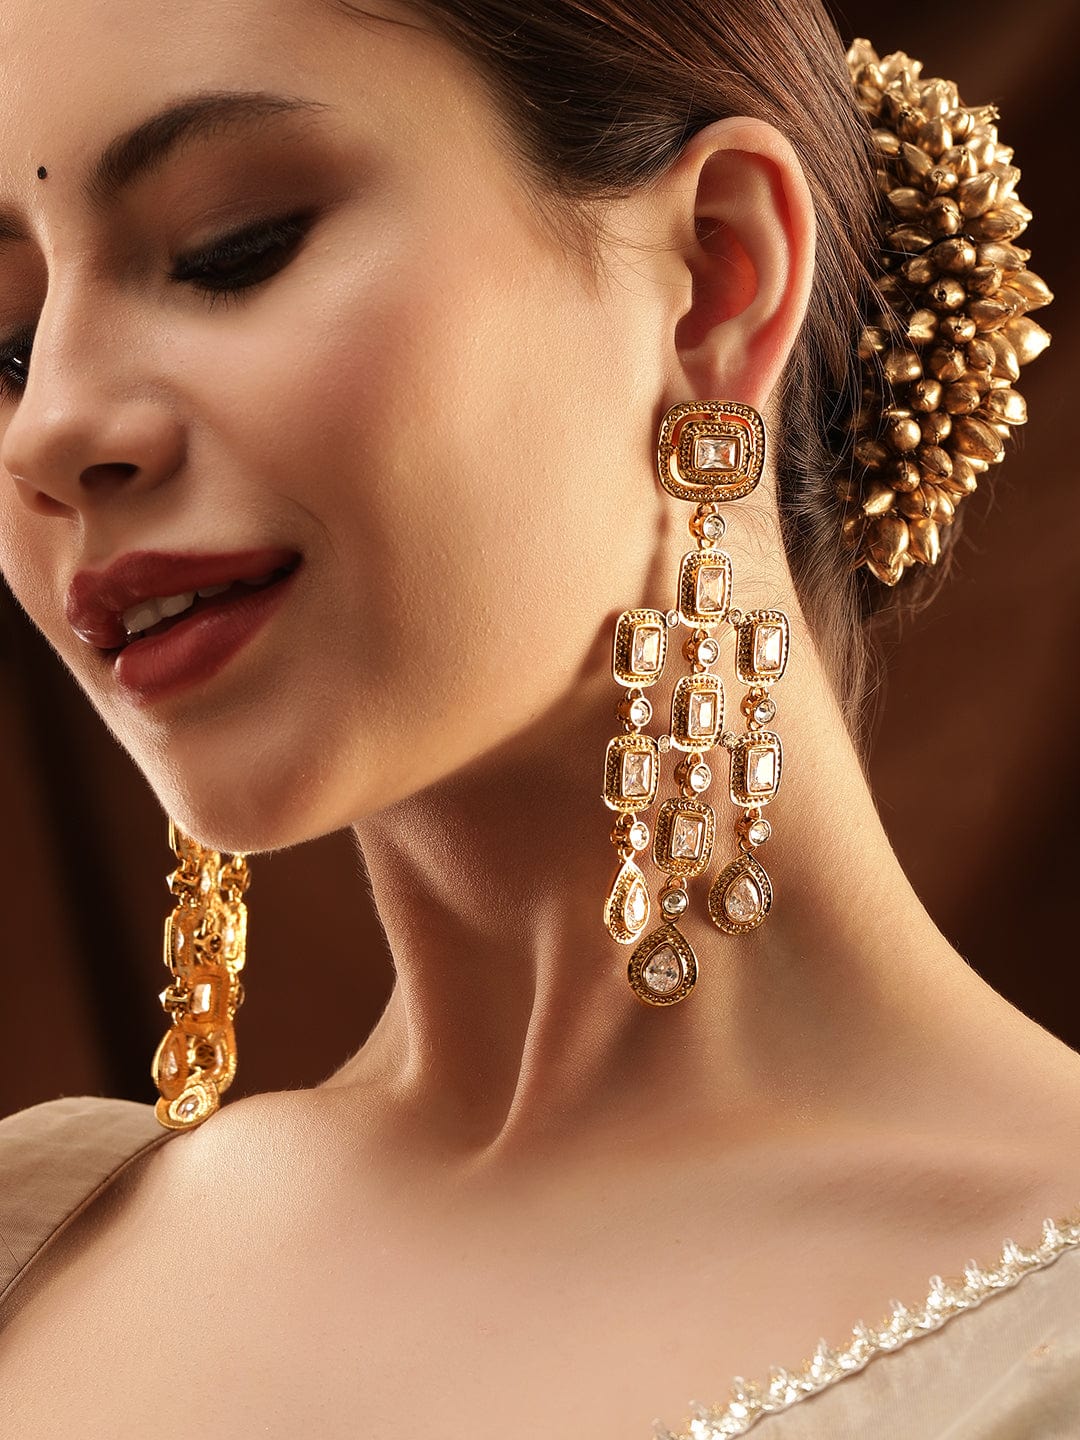 Rubans 22K Antique Gold Plated Zirconia Studded Chandelier Earrings Earrings